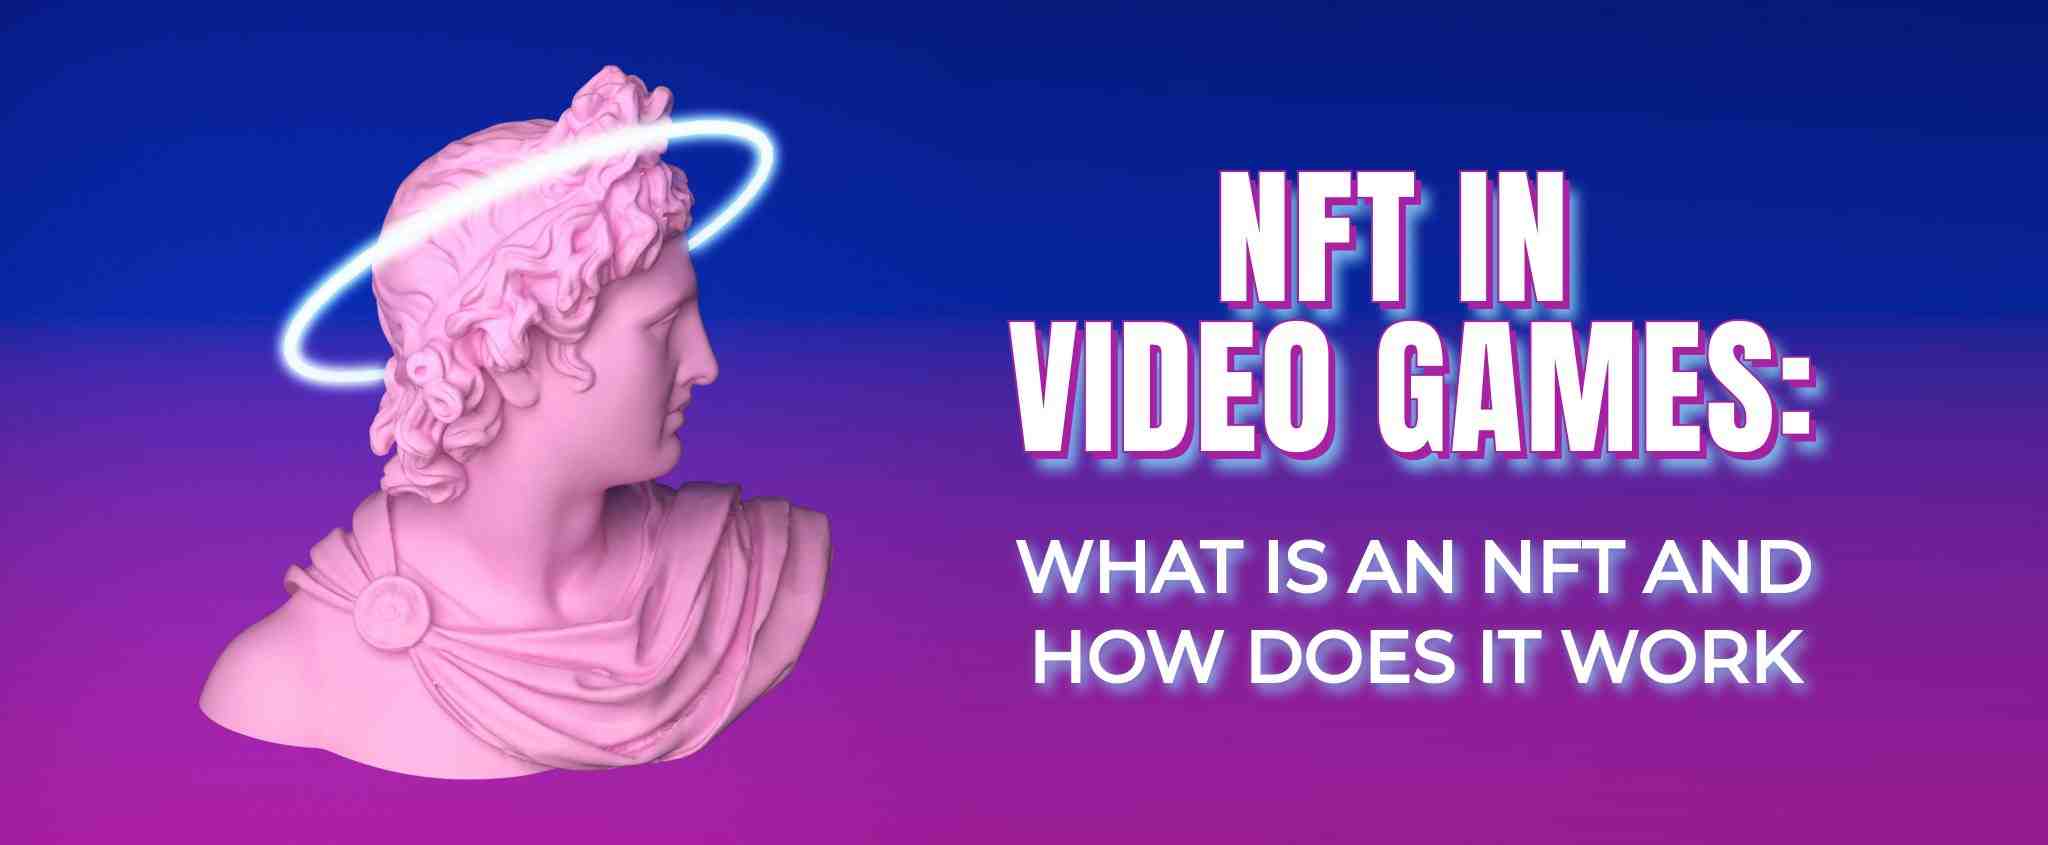 Comment savoir si un NFT a du potentiel ?